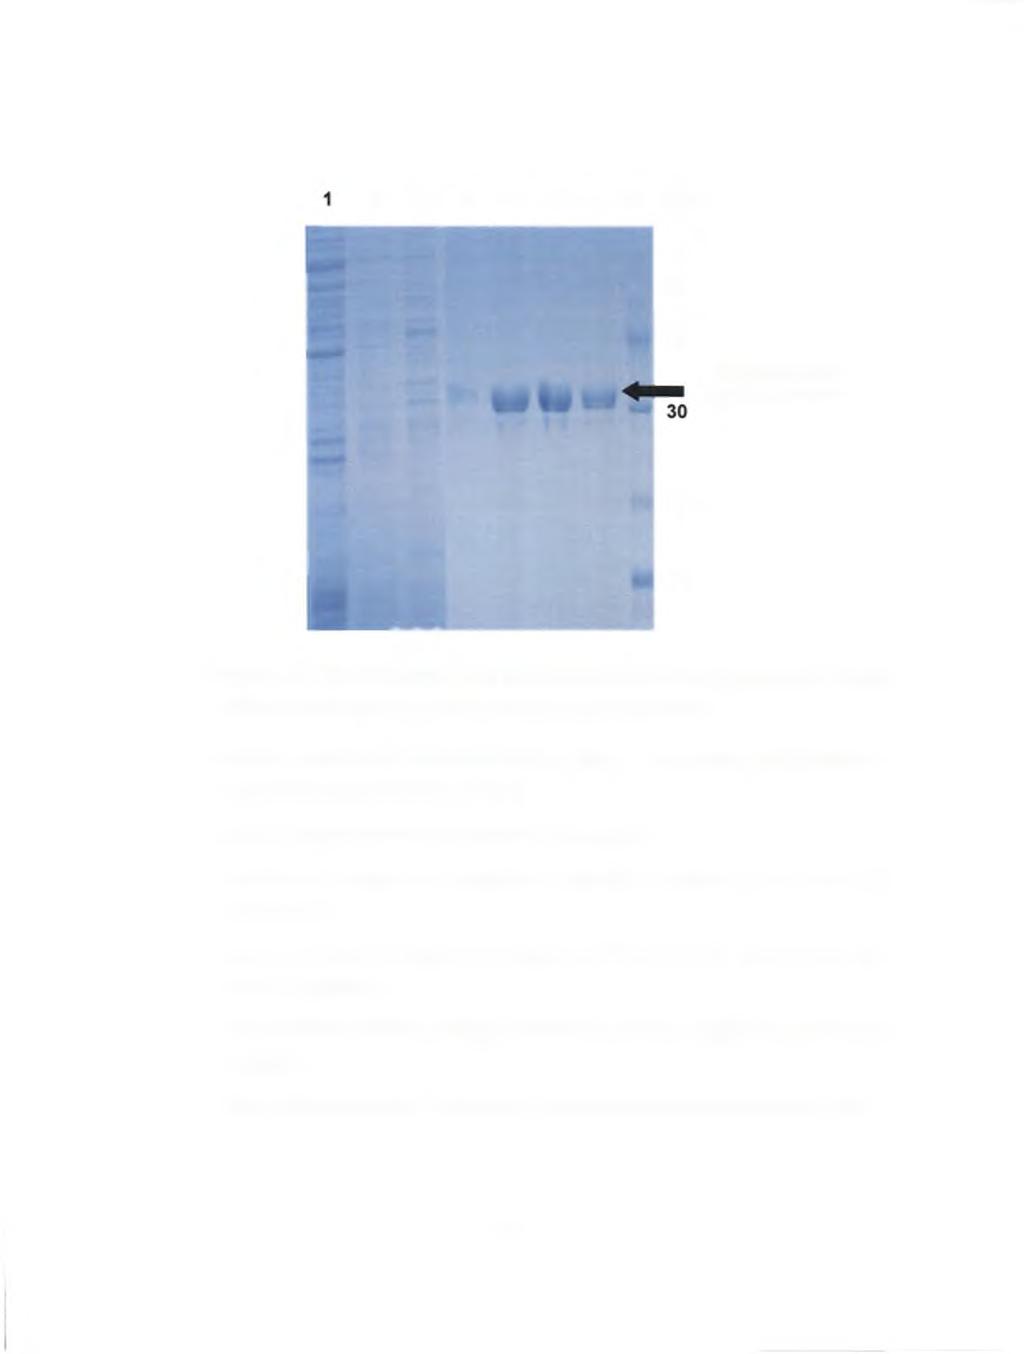 2 3 4 5 6 7 8 kda, m 94 -«i 67 ^ 43 Recom binant Xyl-Cat protein 20 14 Figure 5.